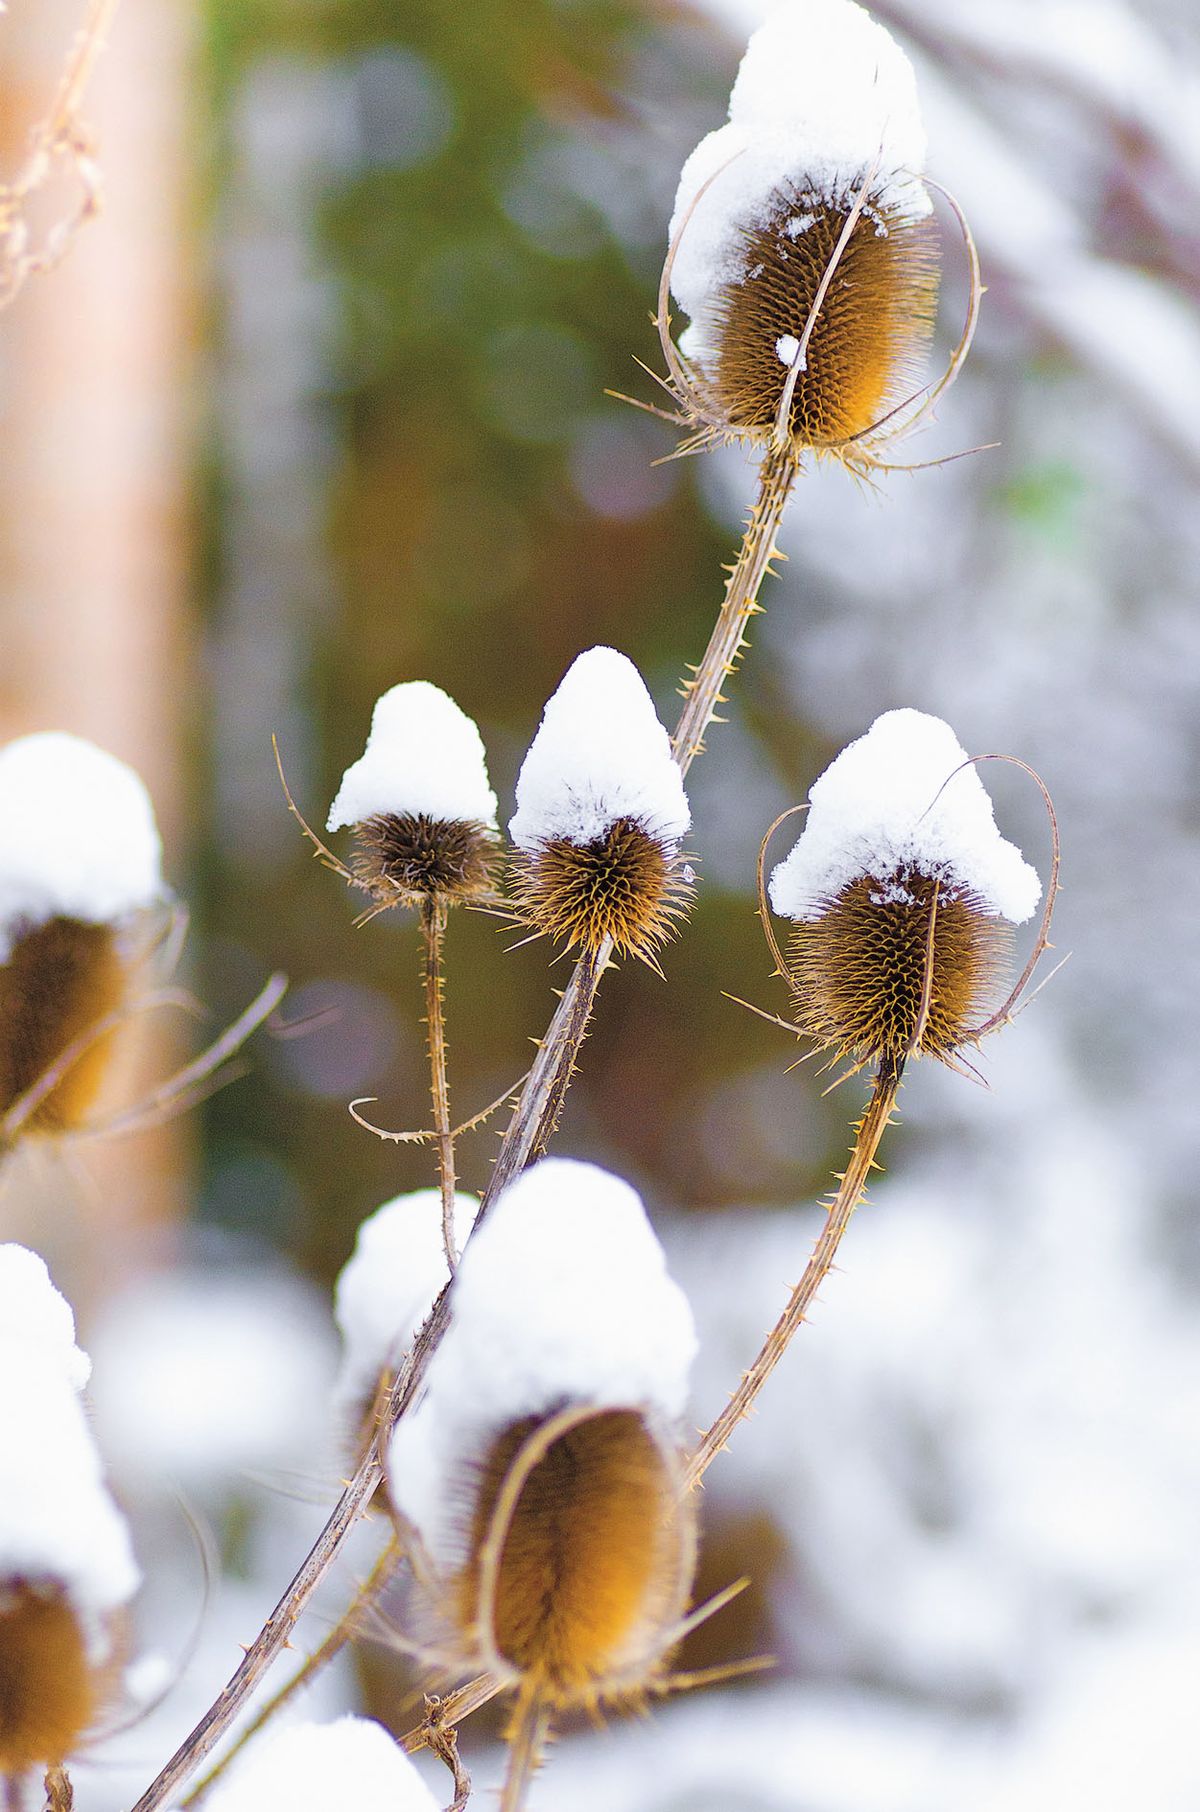 Štětka planá (Dipsacus fullonum). S oblibou ji navštěvuje sníh i pestří stehlíci, kterým skýtá energii ze semen.